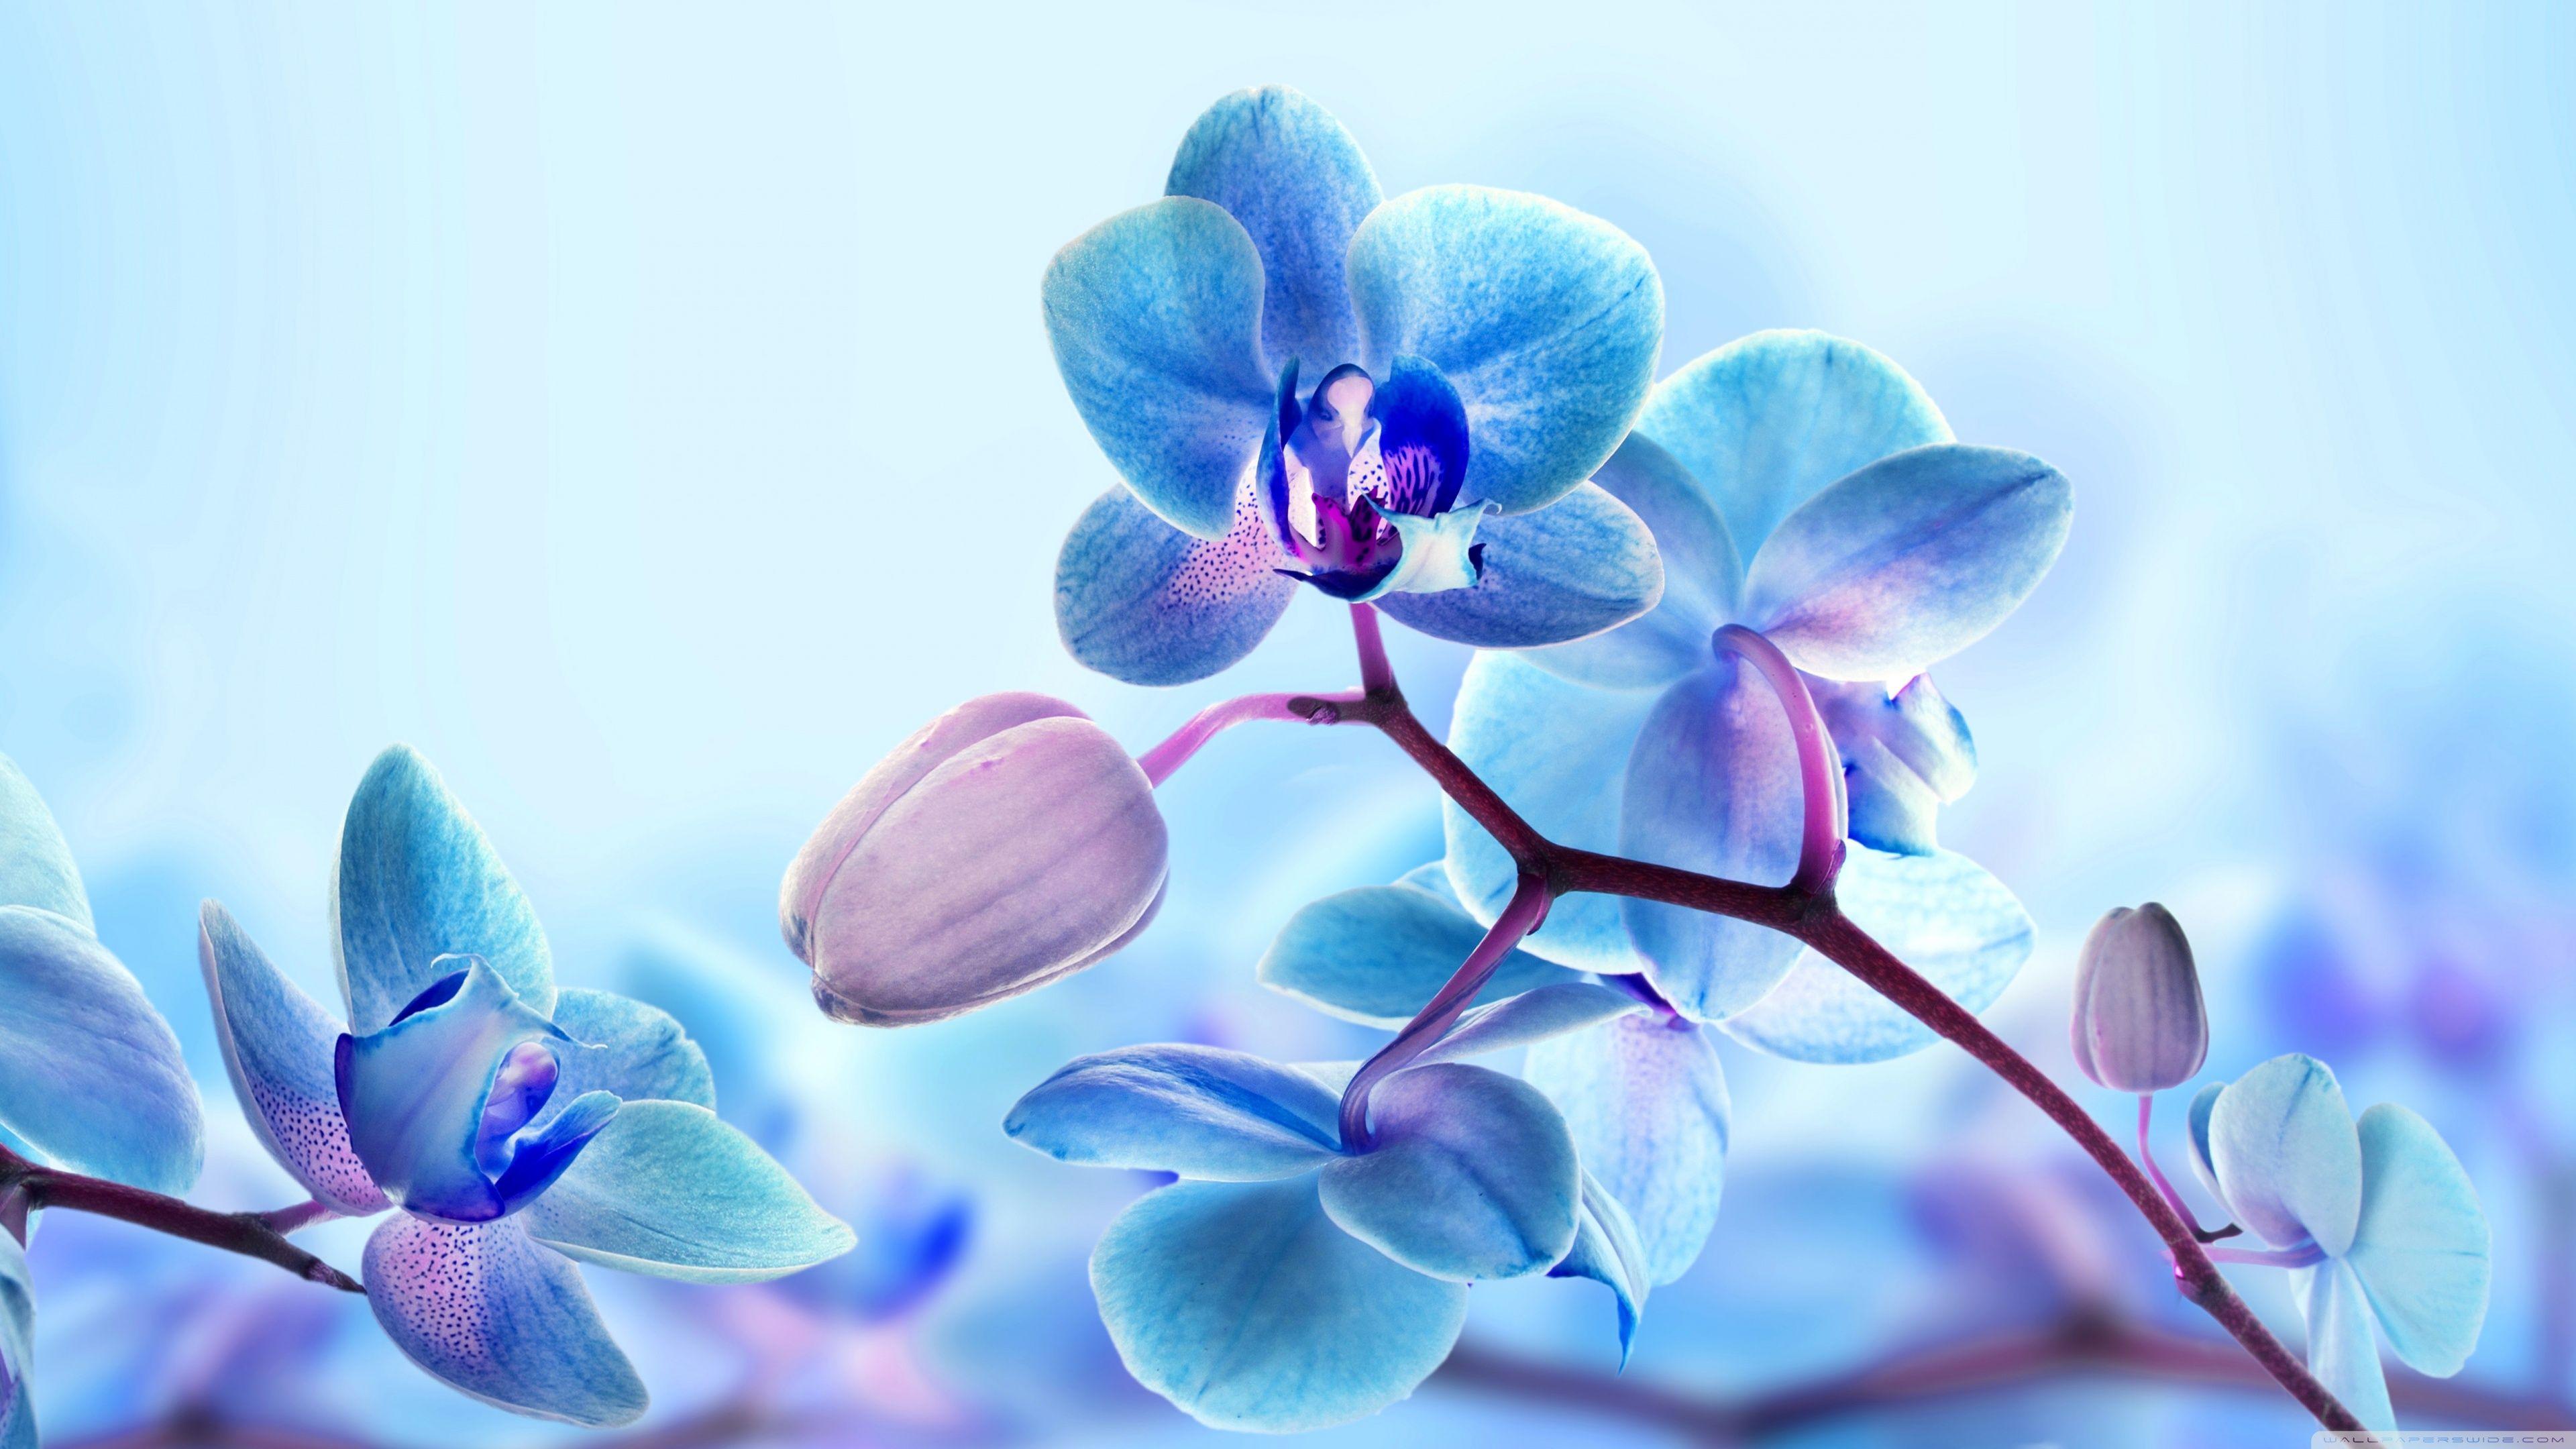 Blue Orchid Flowers ❤ 4K HD Desktop Wallpaper for 4K Ultra HD TV